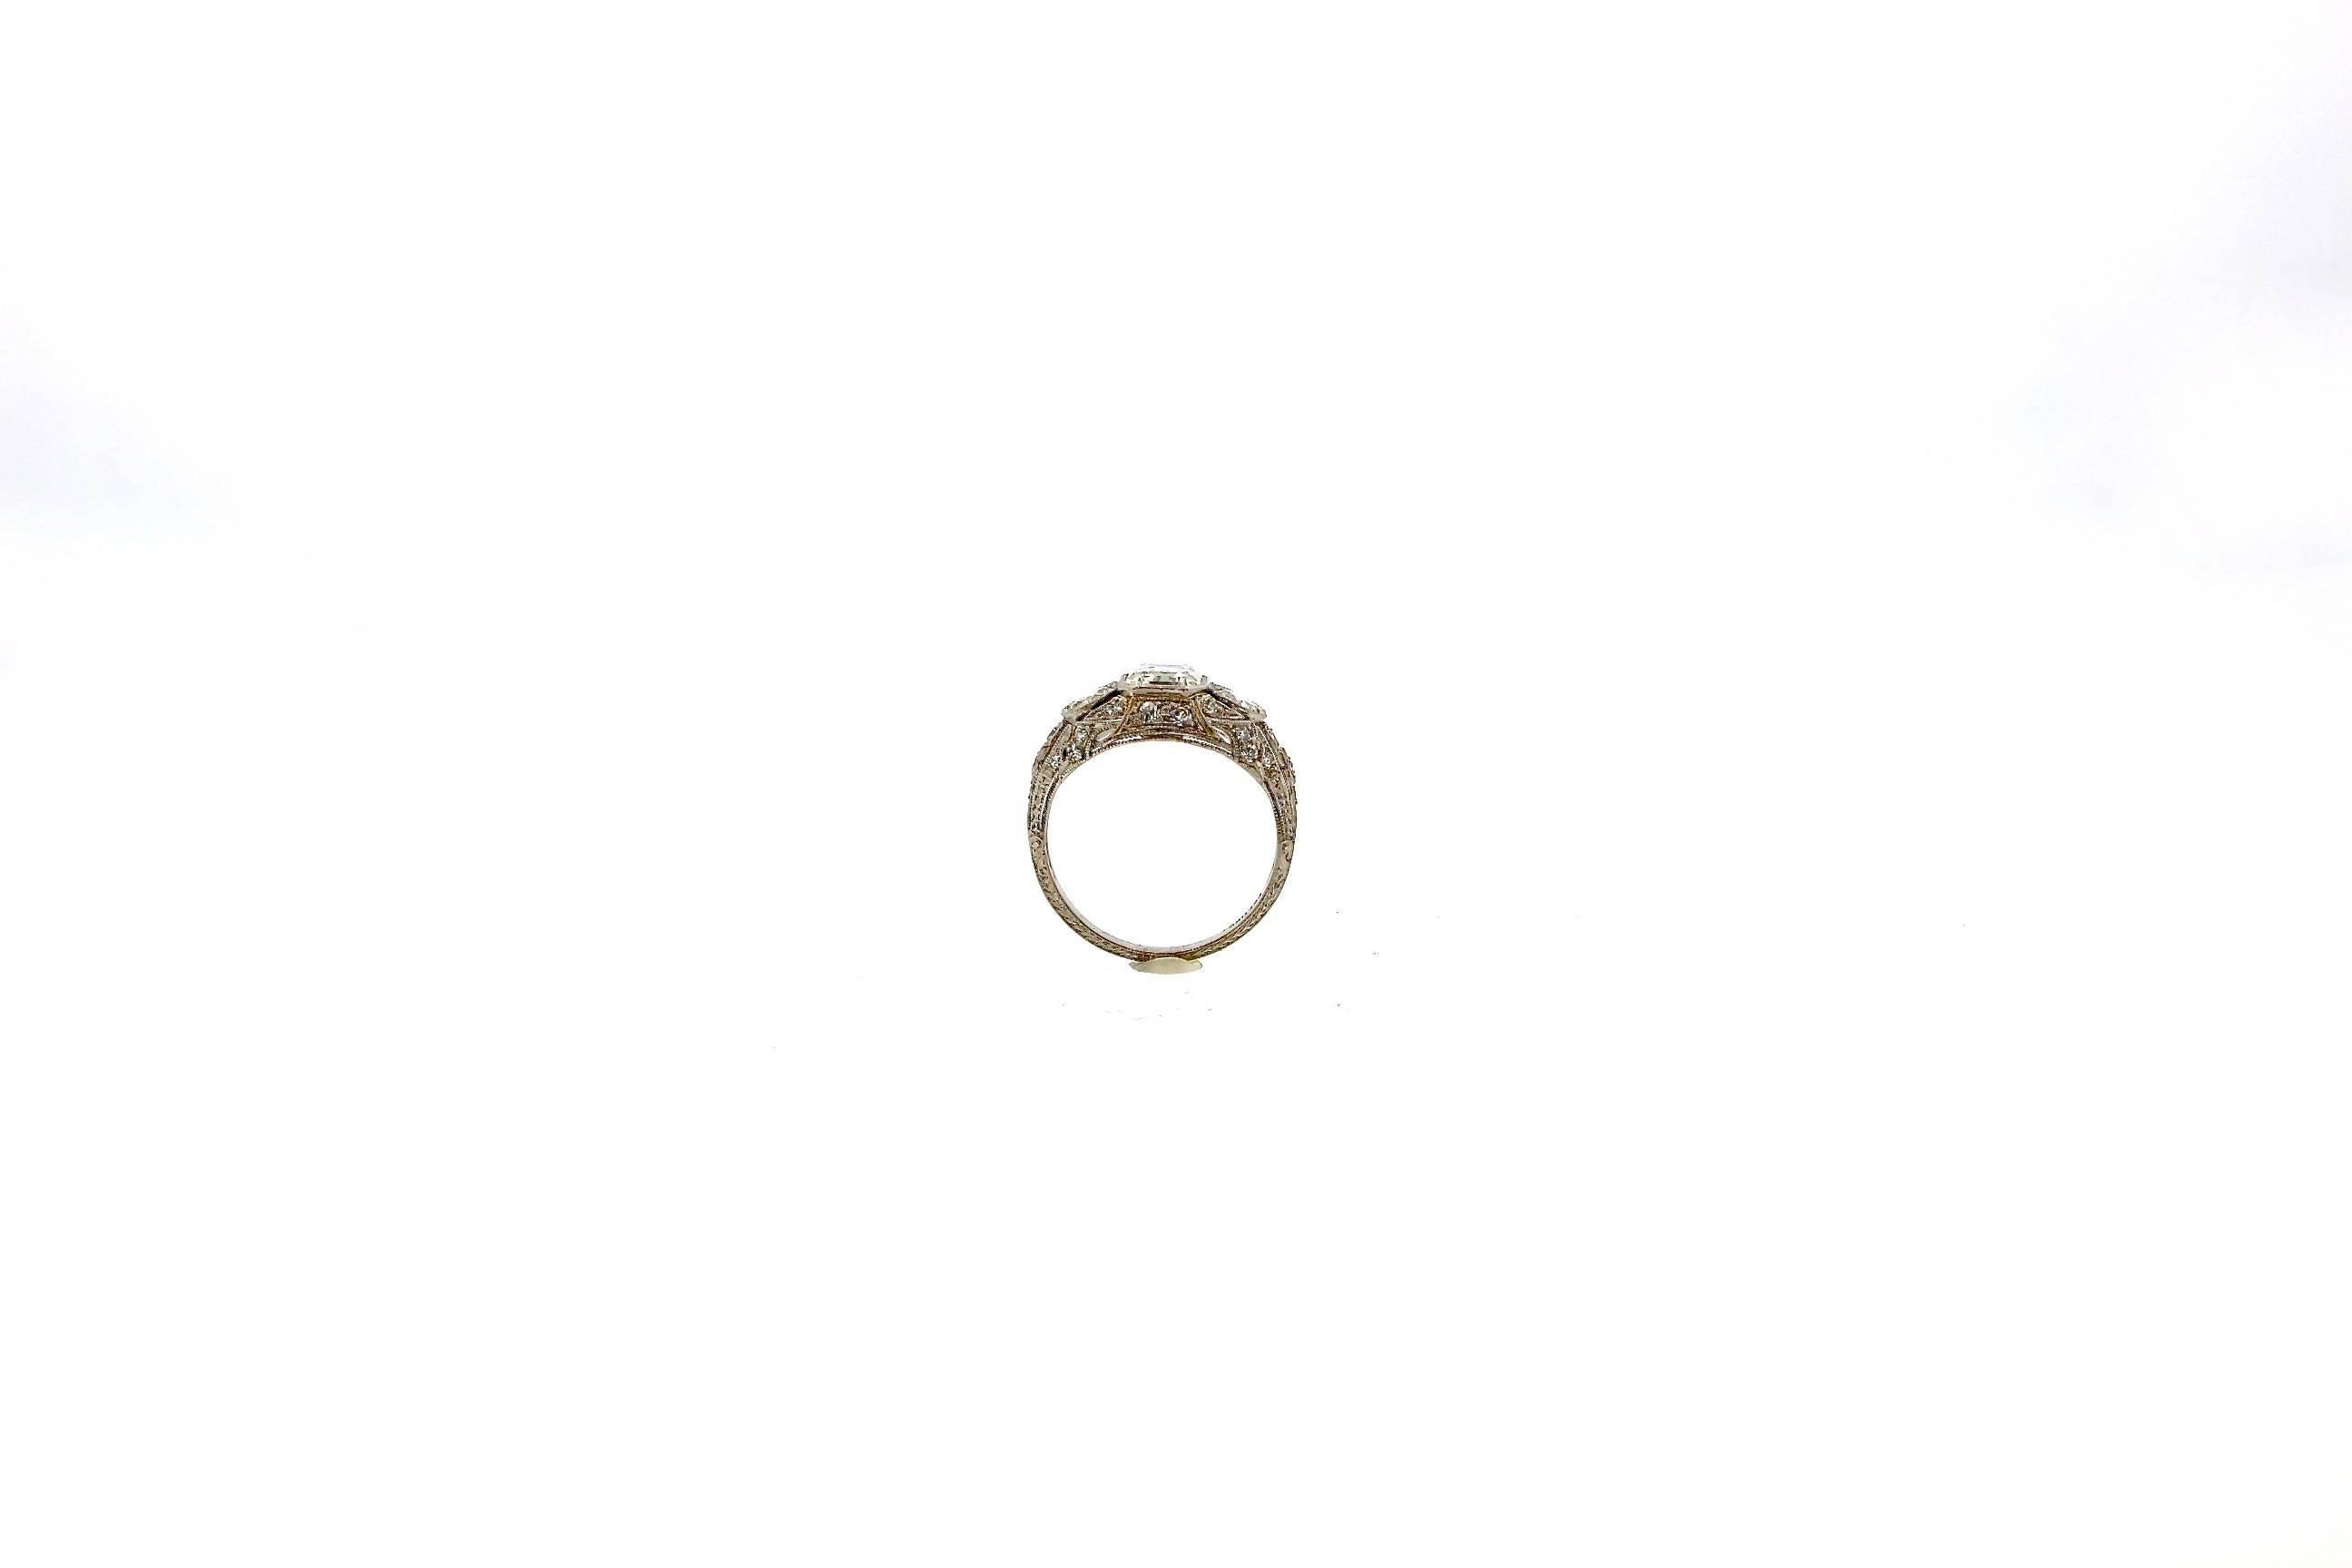 Antique Art Deco 1.30 Carat GIA G Color Square Cut Diamond Platinum Ring 1